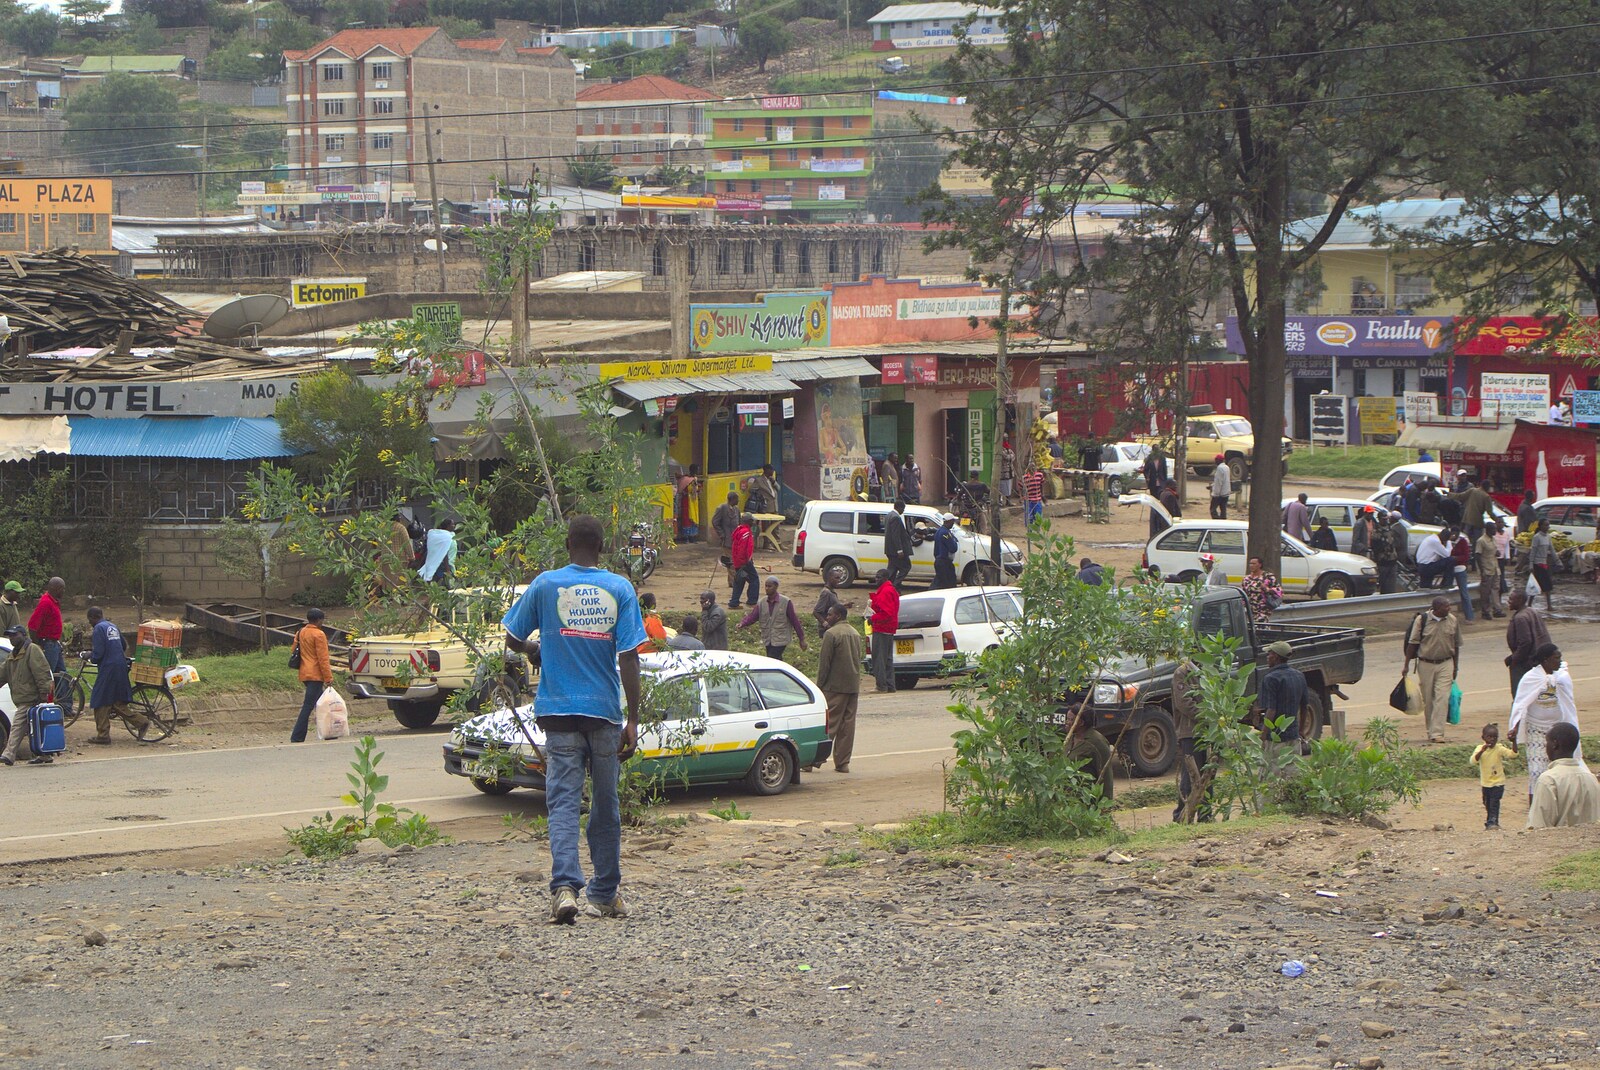 The town of Narok from Nairobi and the Road to Maasai Mara, Kenya, Africa - 1st November 2010